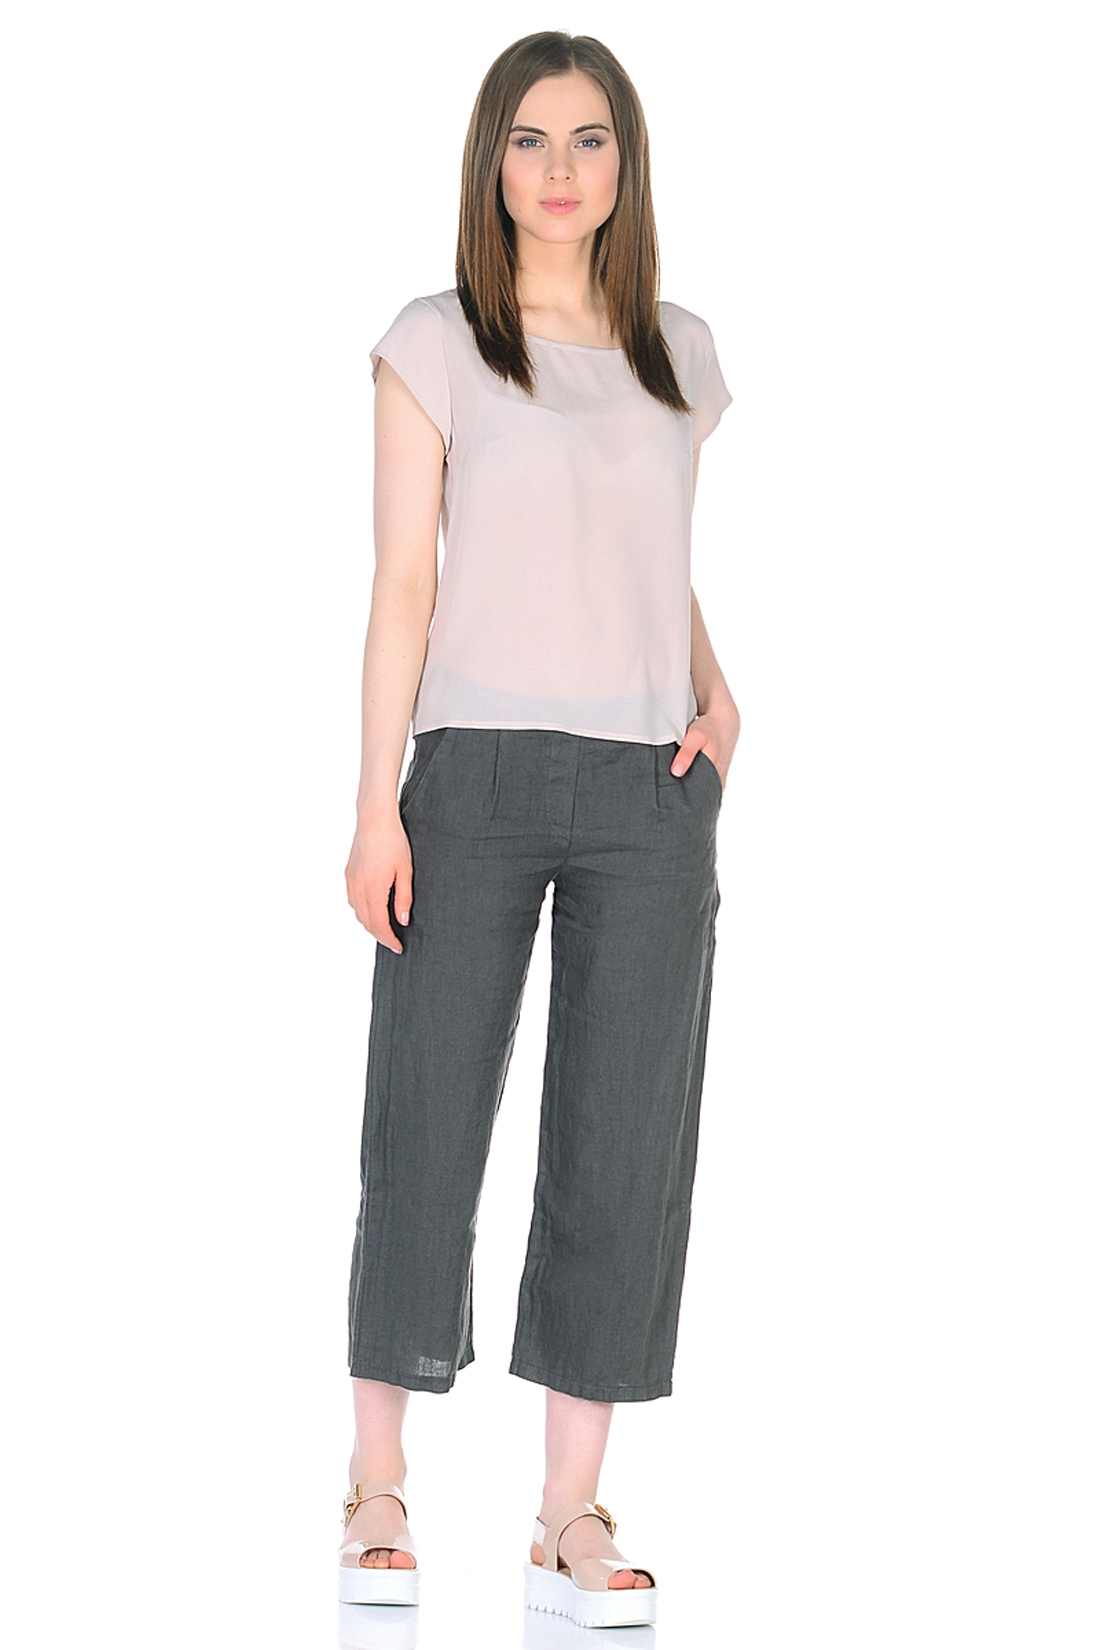 Льняные брюки-кюлоты (арт. baon B298036), размер L, цвет серый Льняные брюки-кюлоты (арт. baon B298036) - фото 3